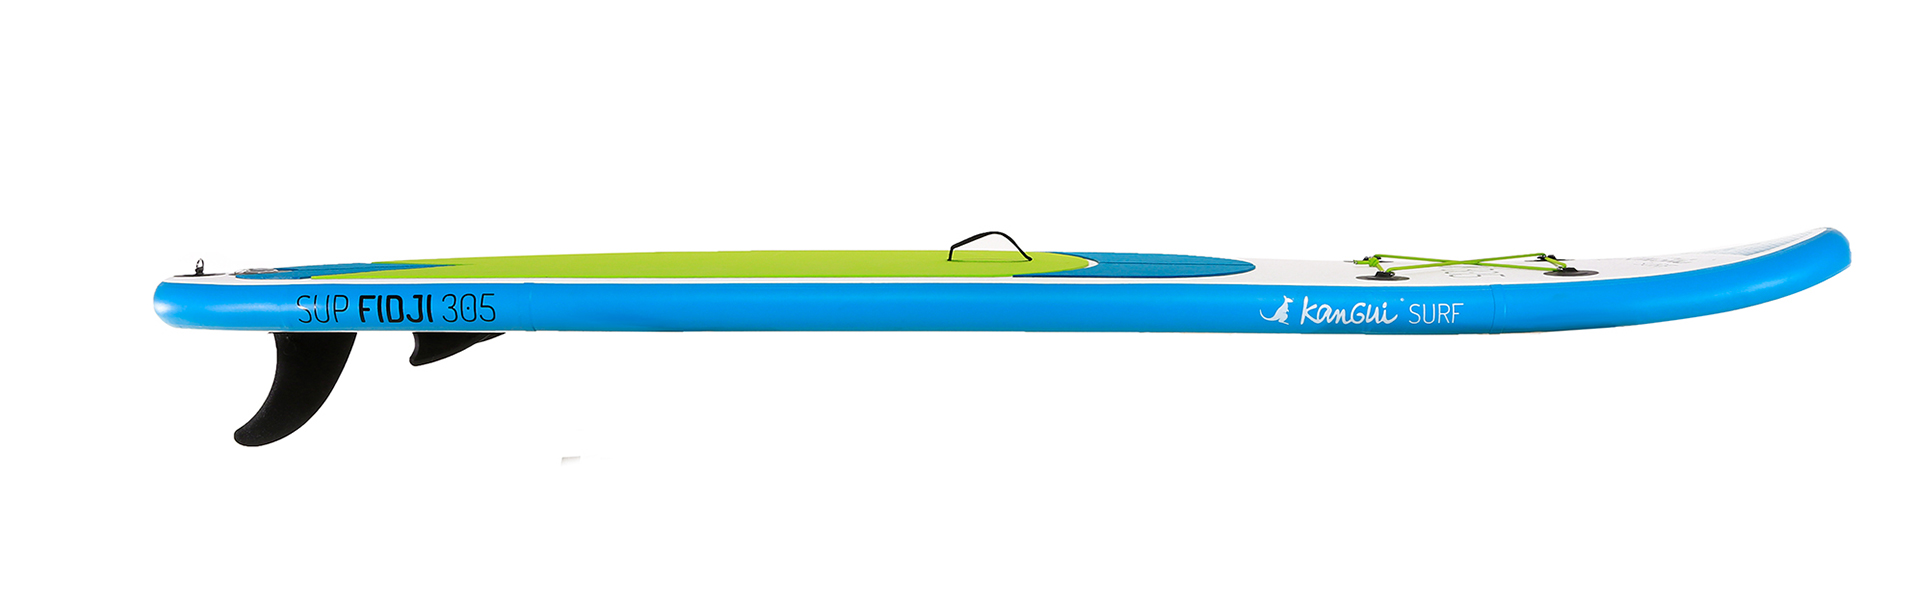 Pourquoi choisir un stand up paddle gonflable plutôt qu'un rigide ?